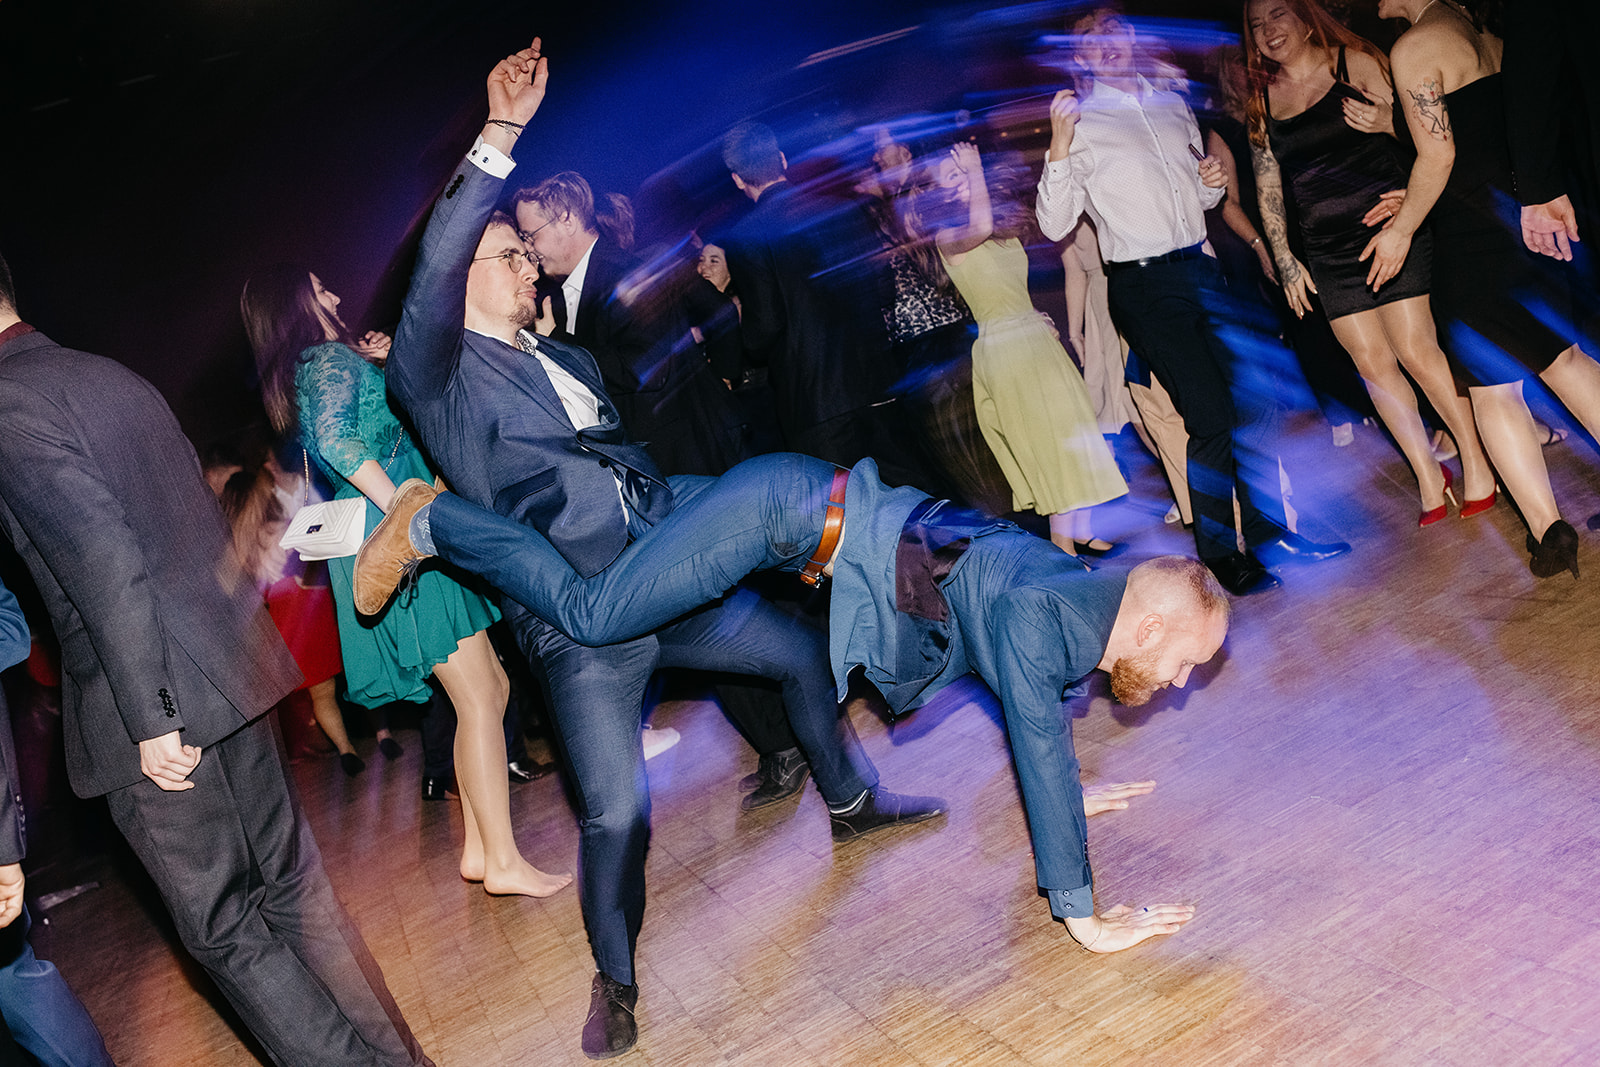 Maturtní ples breakdance battle Dům kultury Liberec fotograf YOUNME Hub Manina Jakub